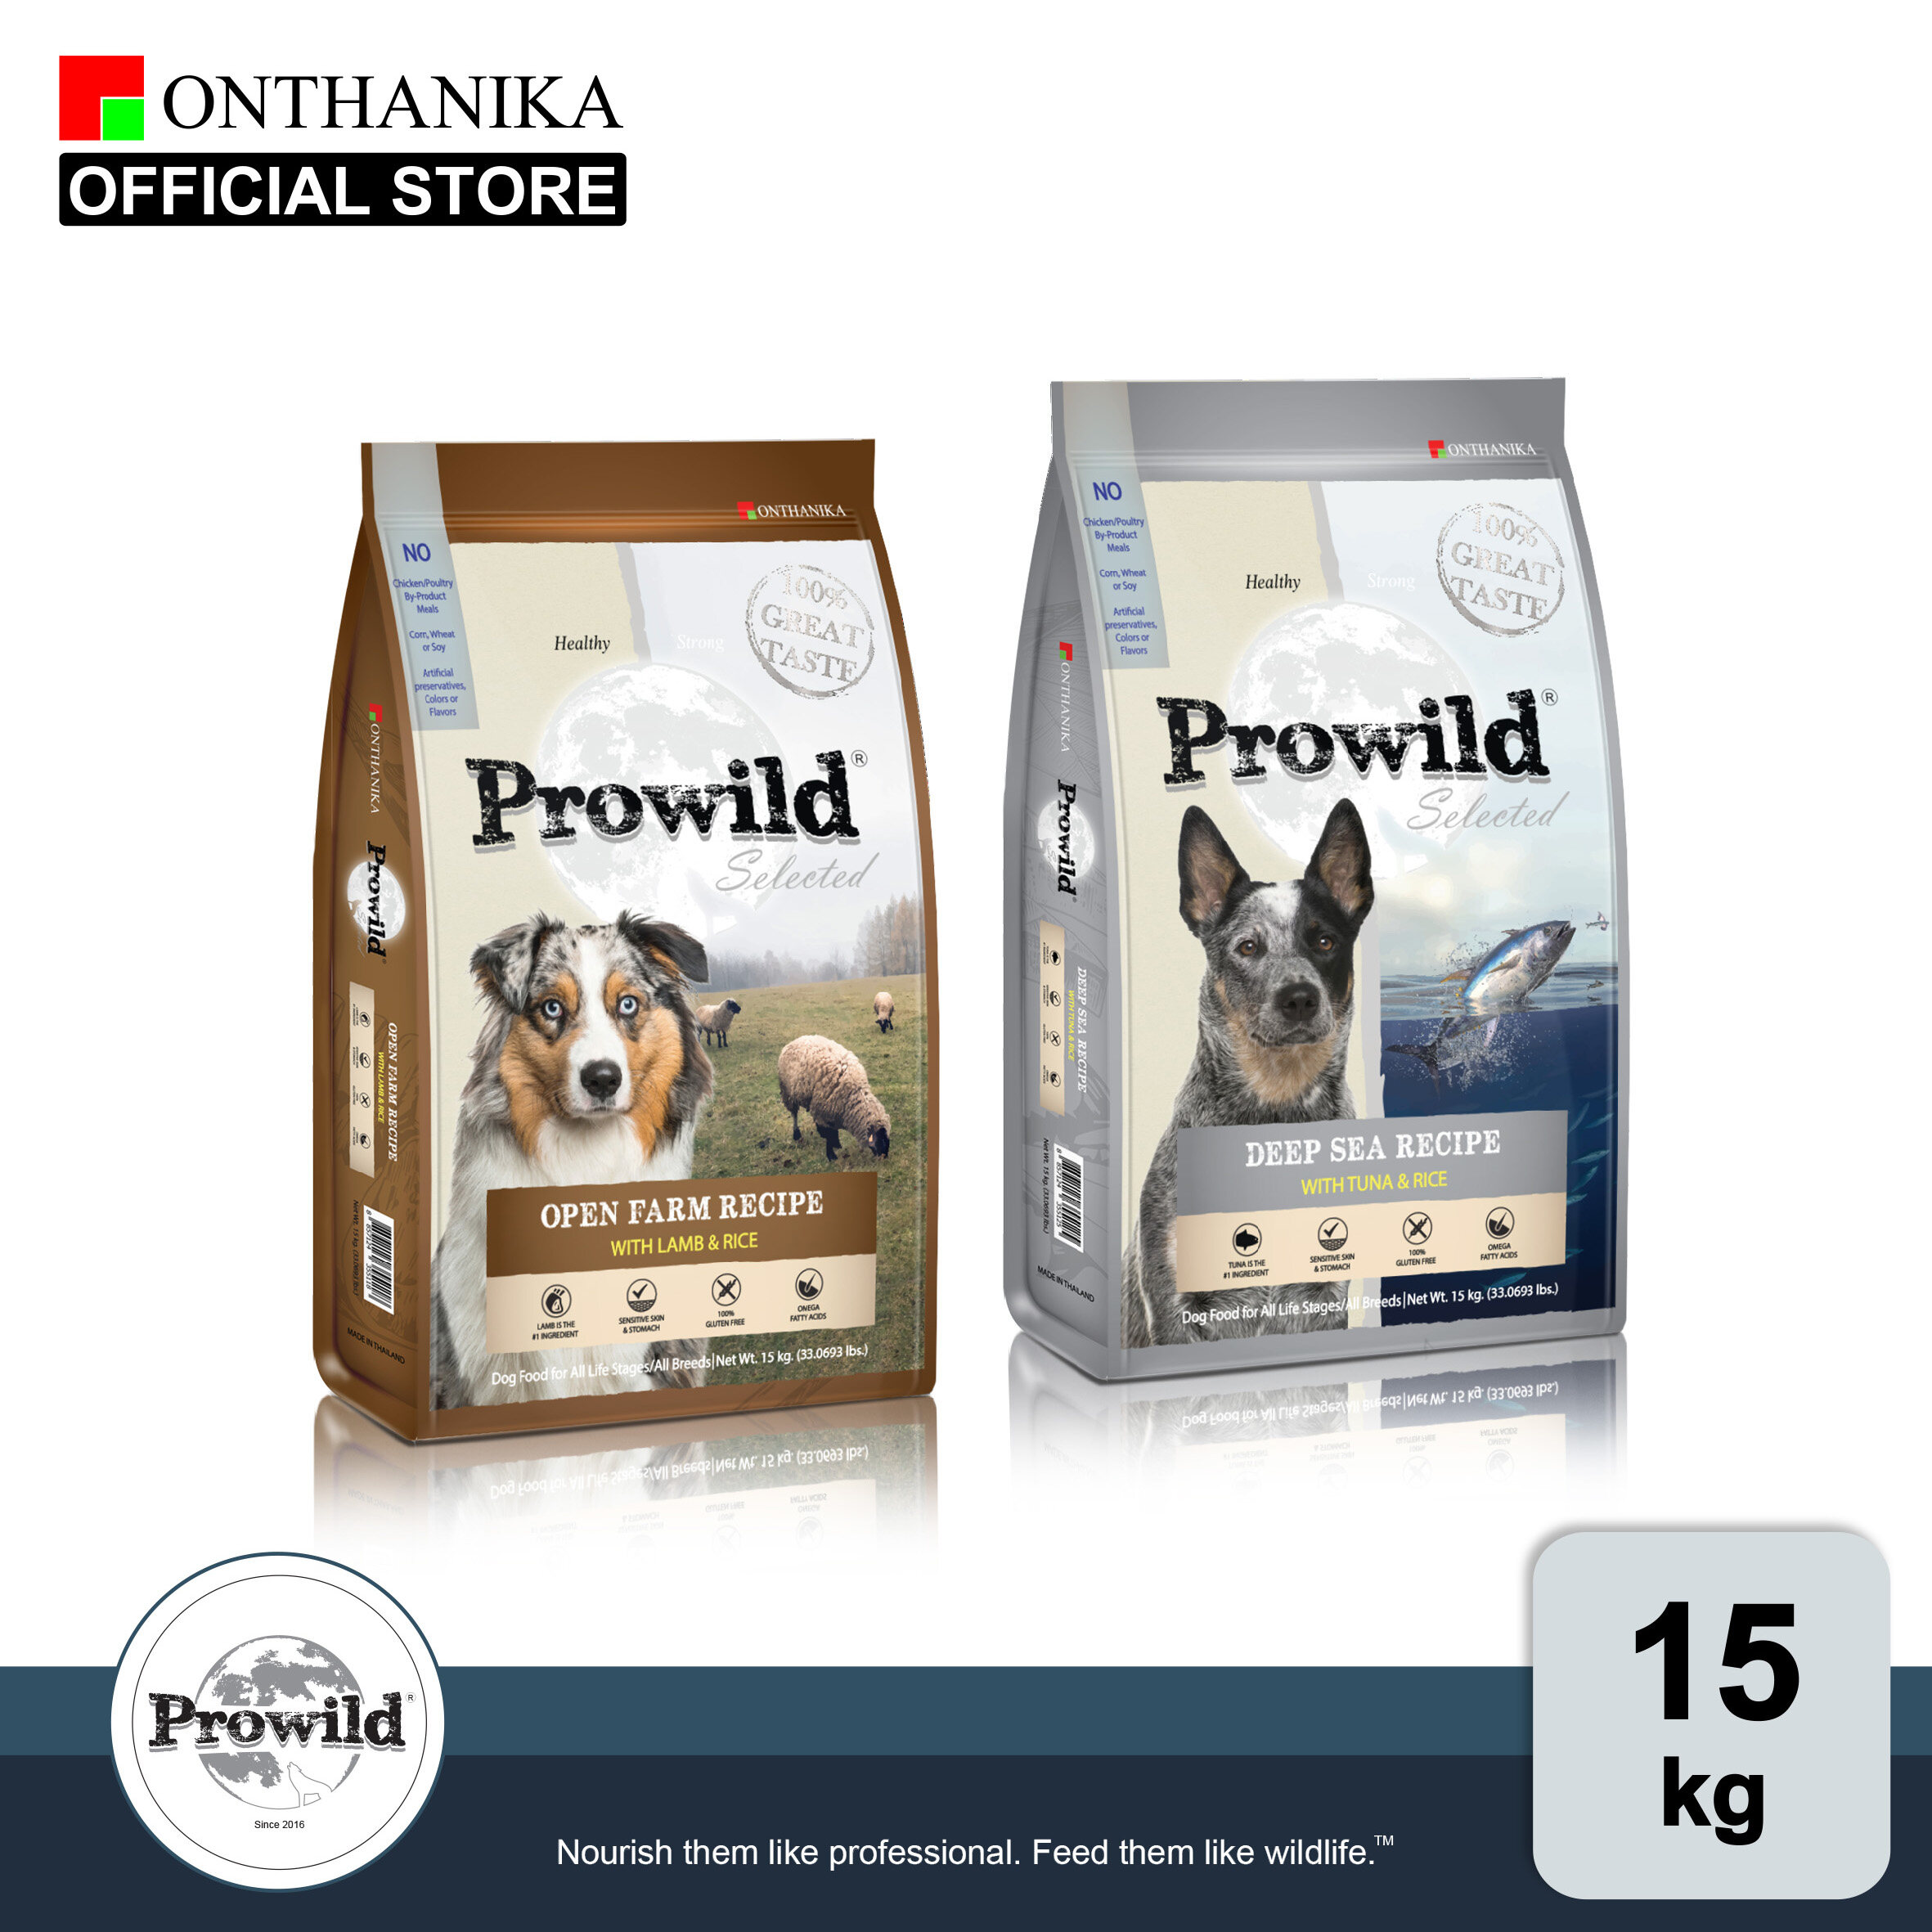 [ส่งฟรี] Prowild โปรไวลด์ อาหารสุนัขทุกสายพันธุ์/ทุกช่วงวัย ขนาด 15 kg (ถุงย่อยภายใน 5 kg x 3 ถุง)